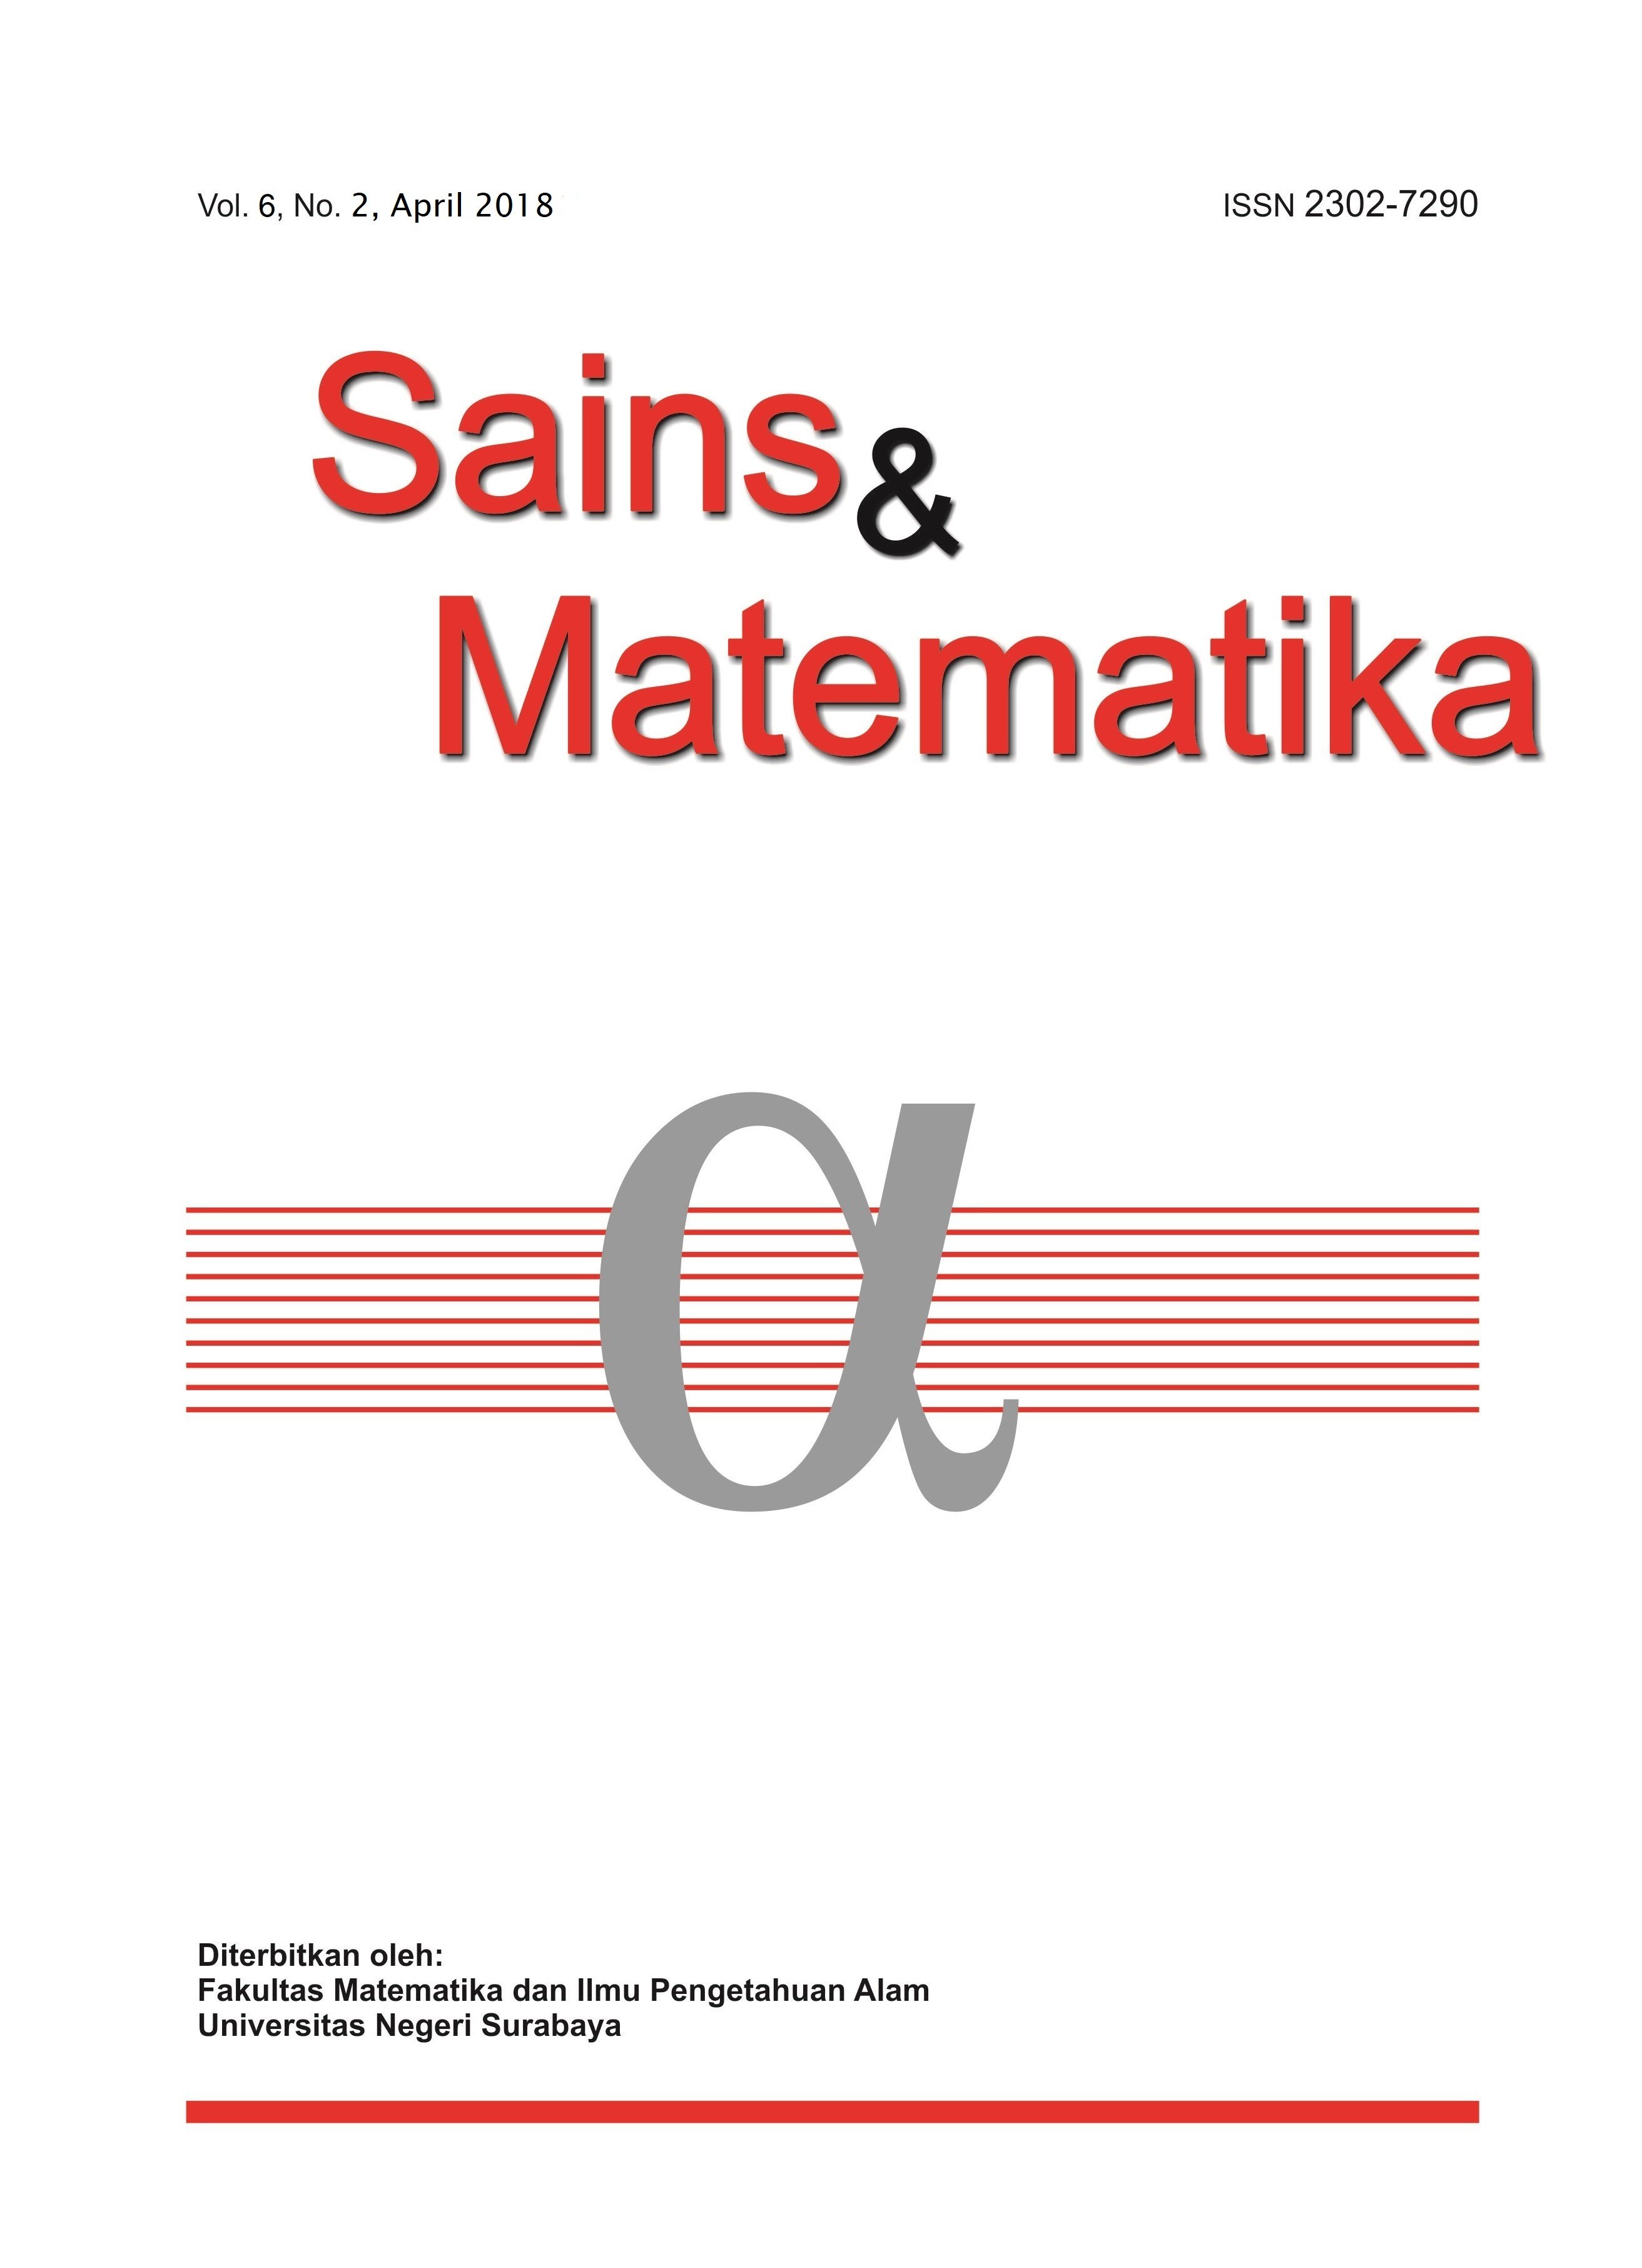 					View Vol. 6 No. 2 (2018): April, Sains & Matematika
				